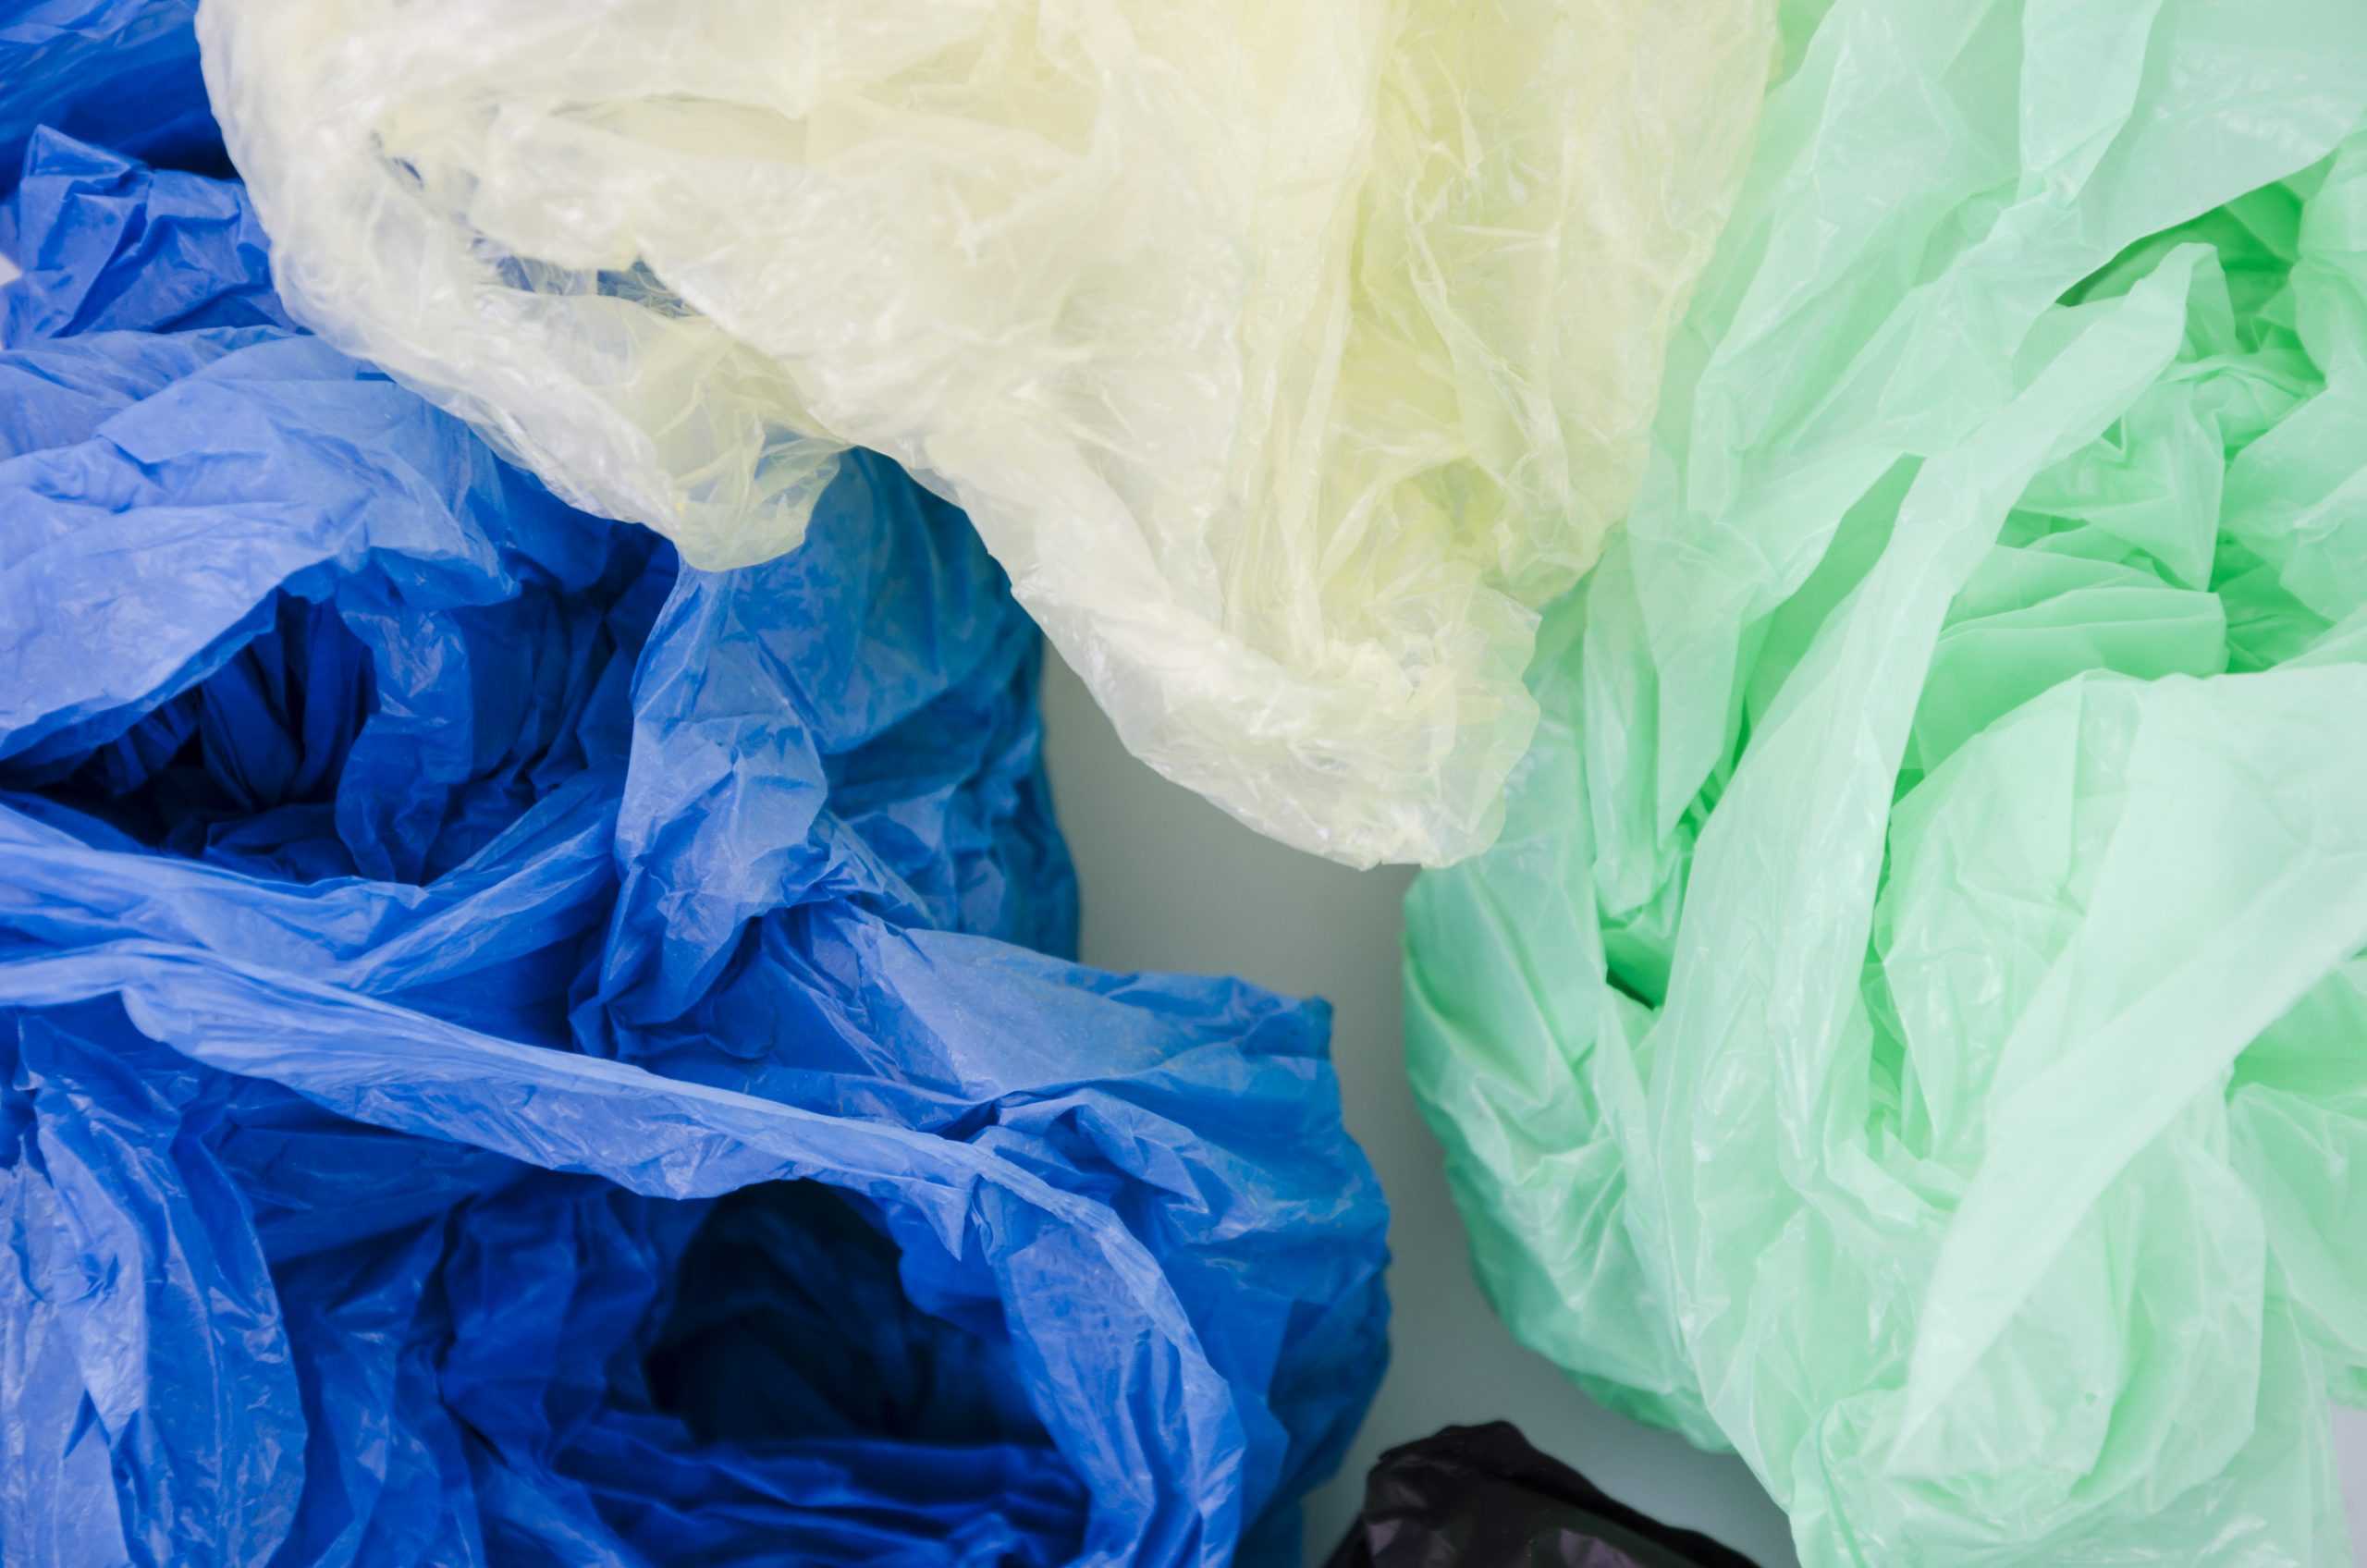 ACME Chile, Winflex y Recollect se unen para impulsar la circularidad del plástico